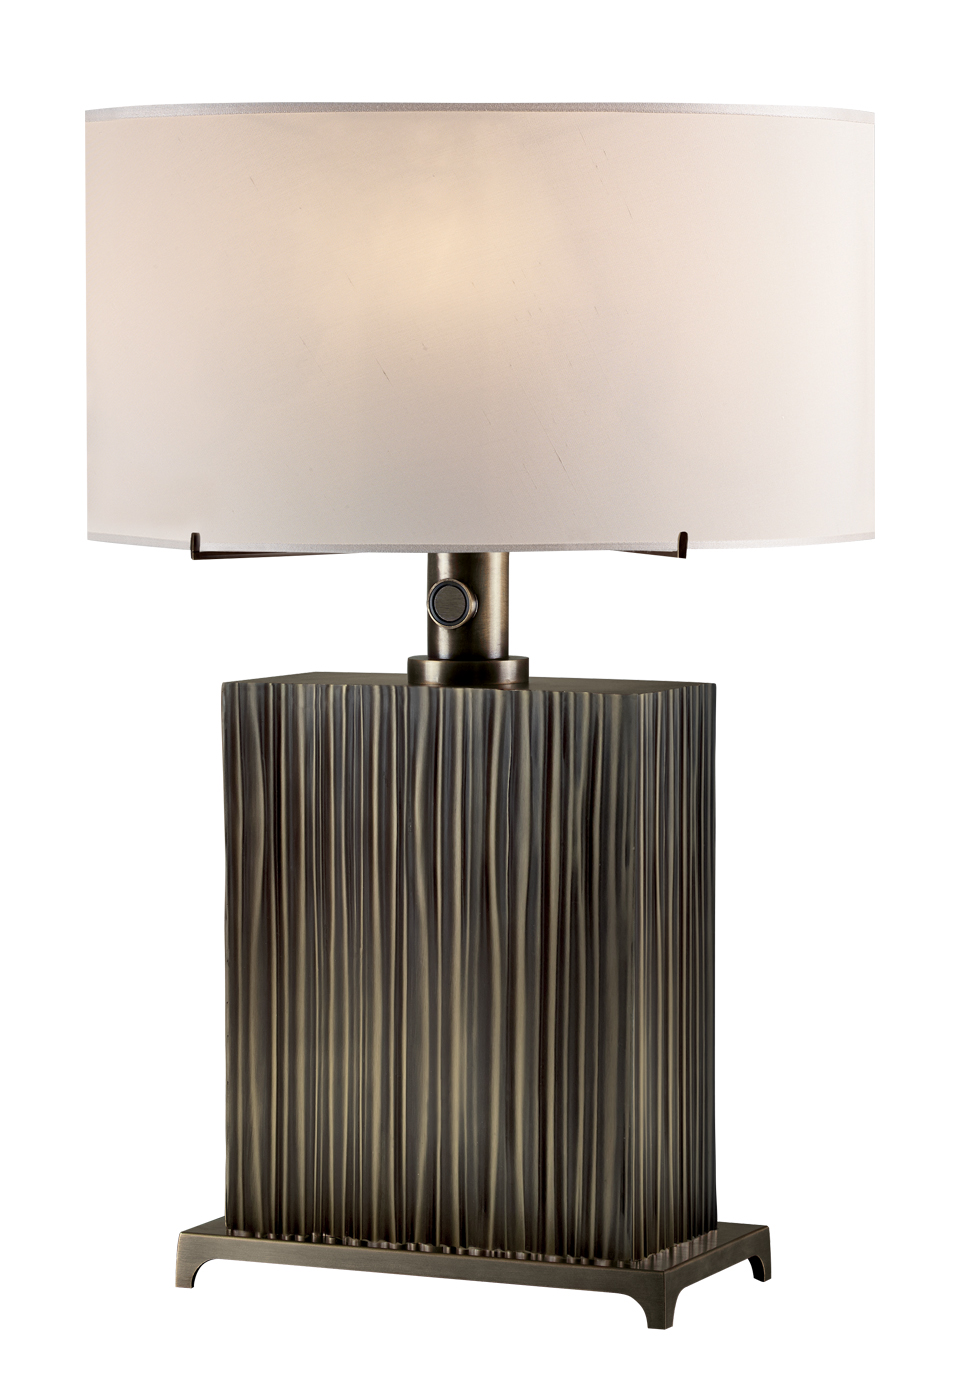 Eccleston è una lampada da tavolo a LED con struttura in bronzo e paralume in seta con bordo fatto a mano, della collezione The London Collection di Promemoria | Promemoria